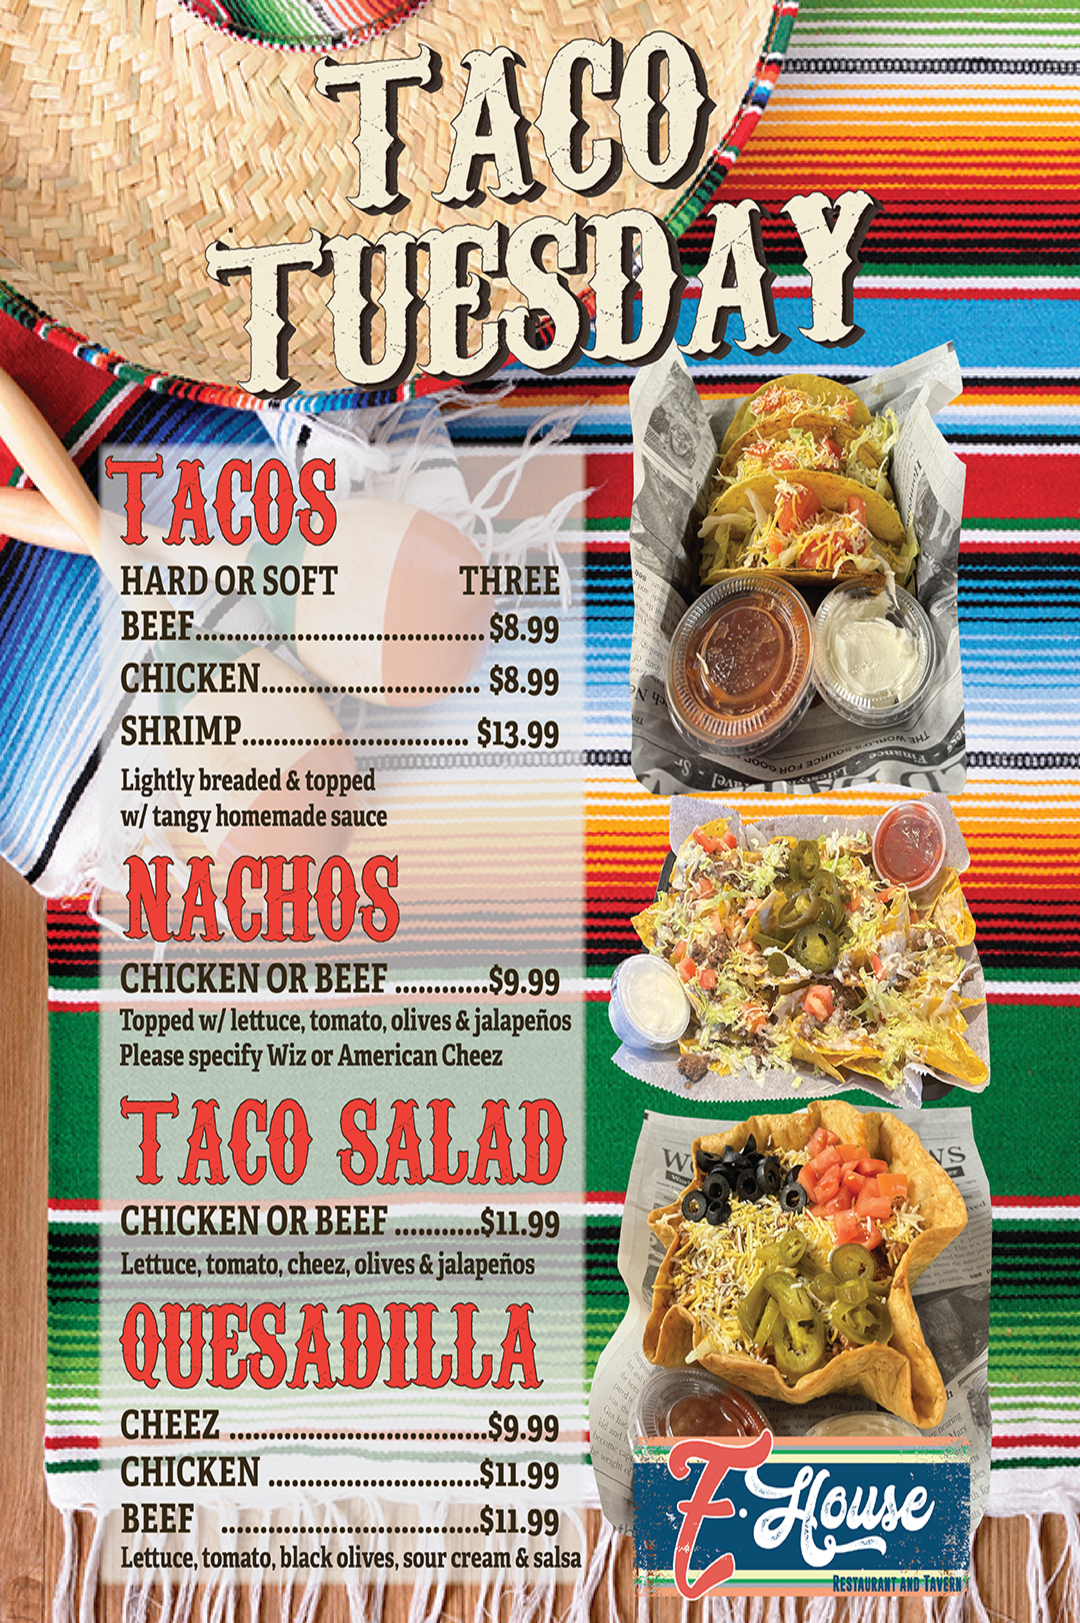 Taco tuesday menu.